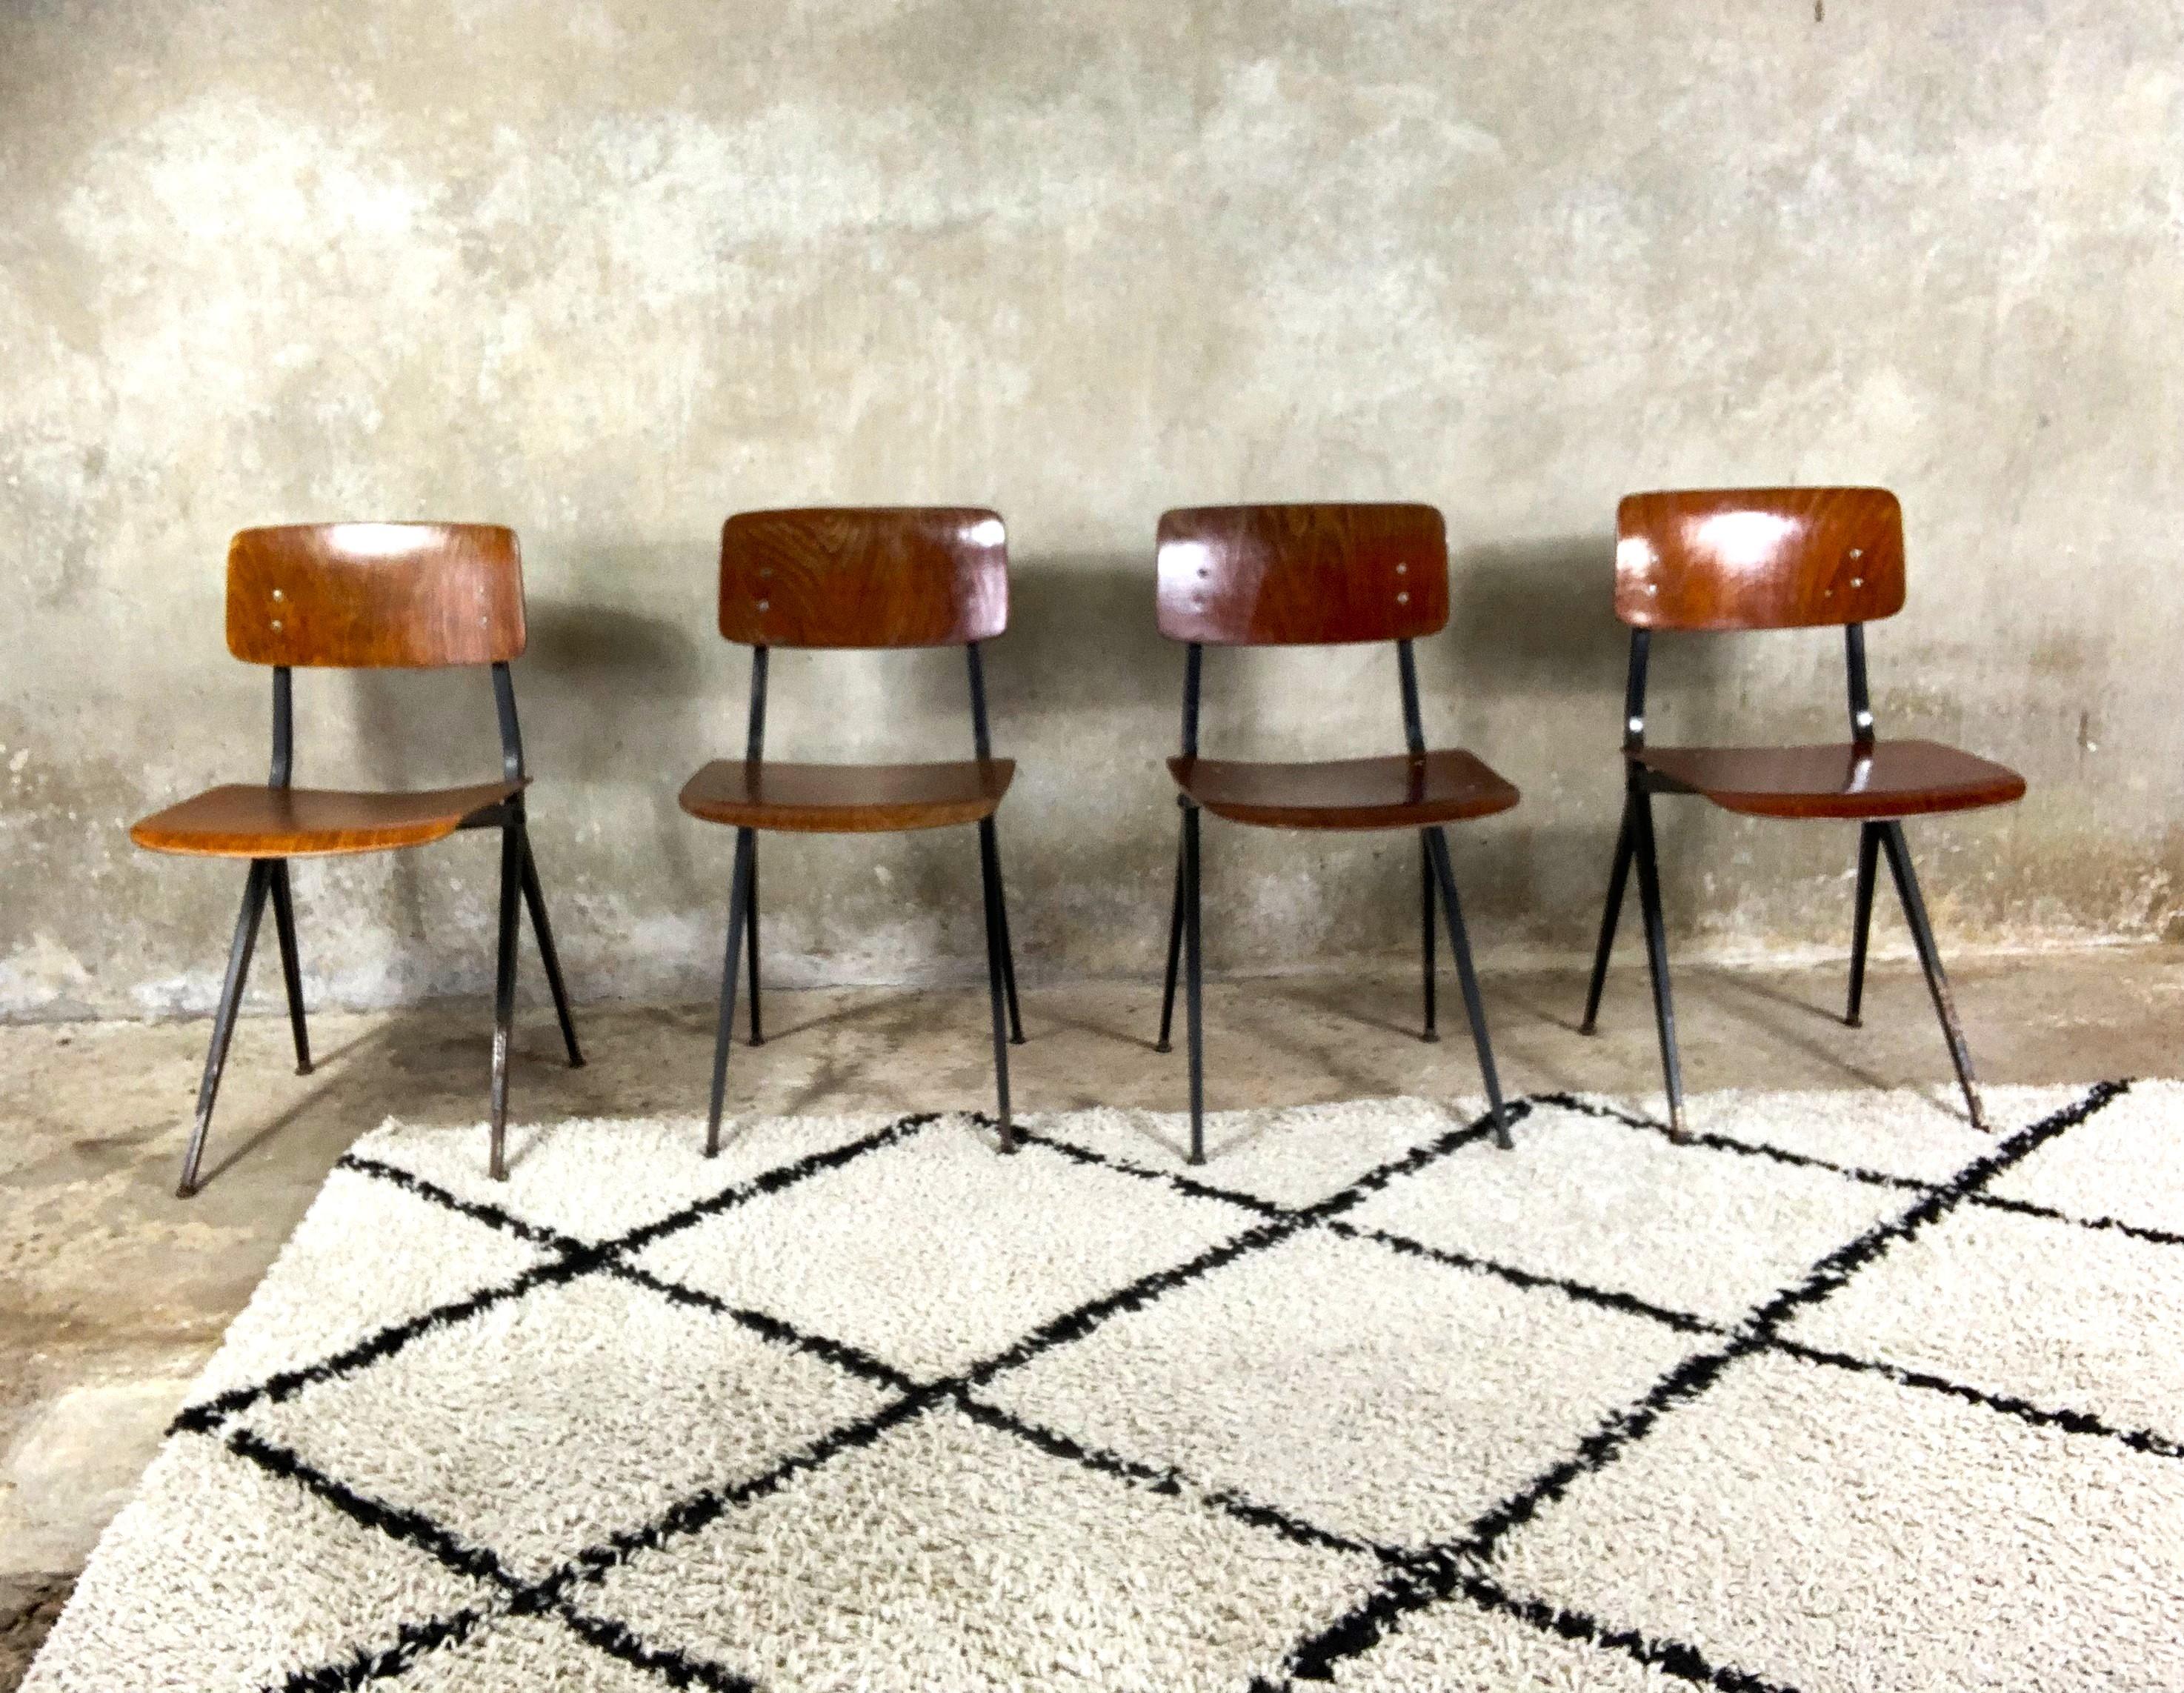 Stühle, entworfen von Ynske Kooistra für Marko Holland für niederländische Schulen in den 1960er Jahren. Diese Stühle haben eine sehr stabile Struktur und Elemente, die gegen Zerstörung resistent sind. Die Anordnung der Beine verleiht dem Ganzen